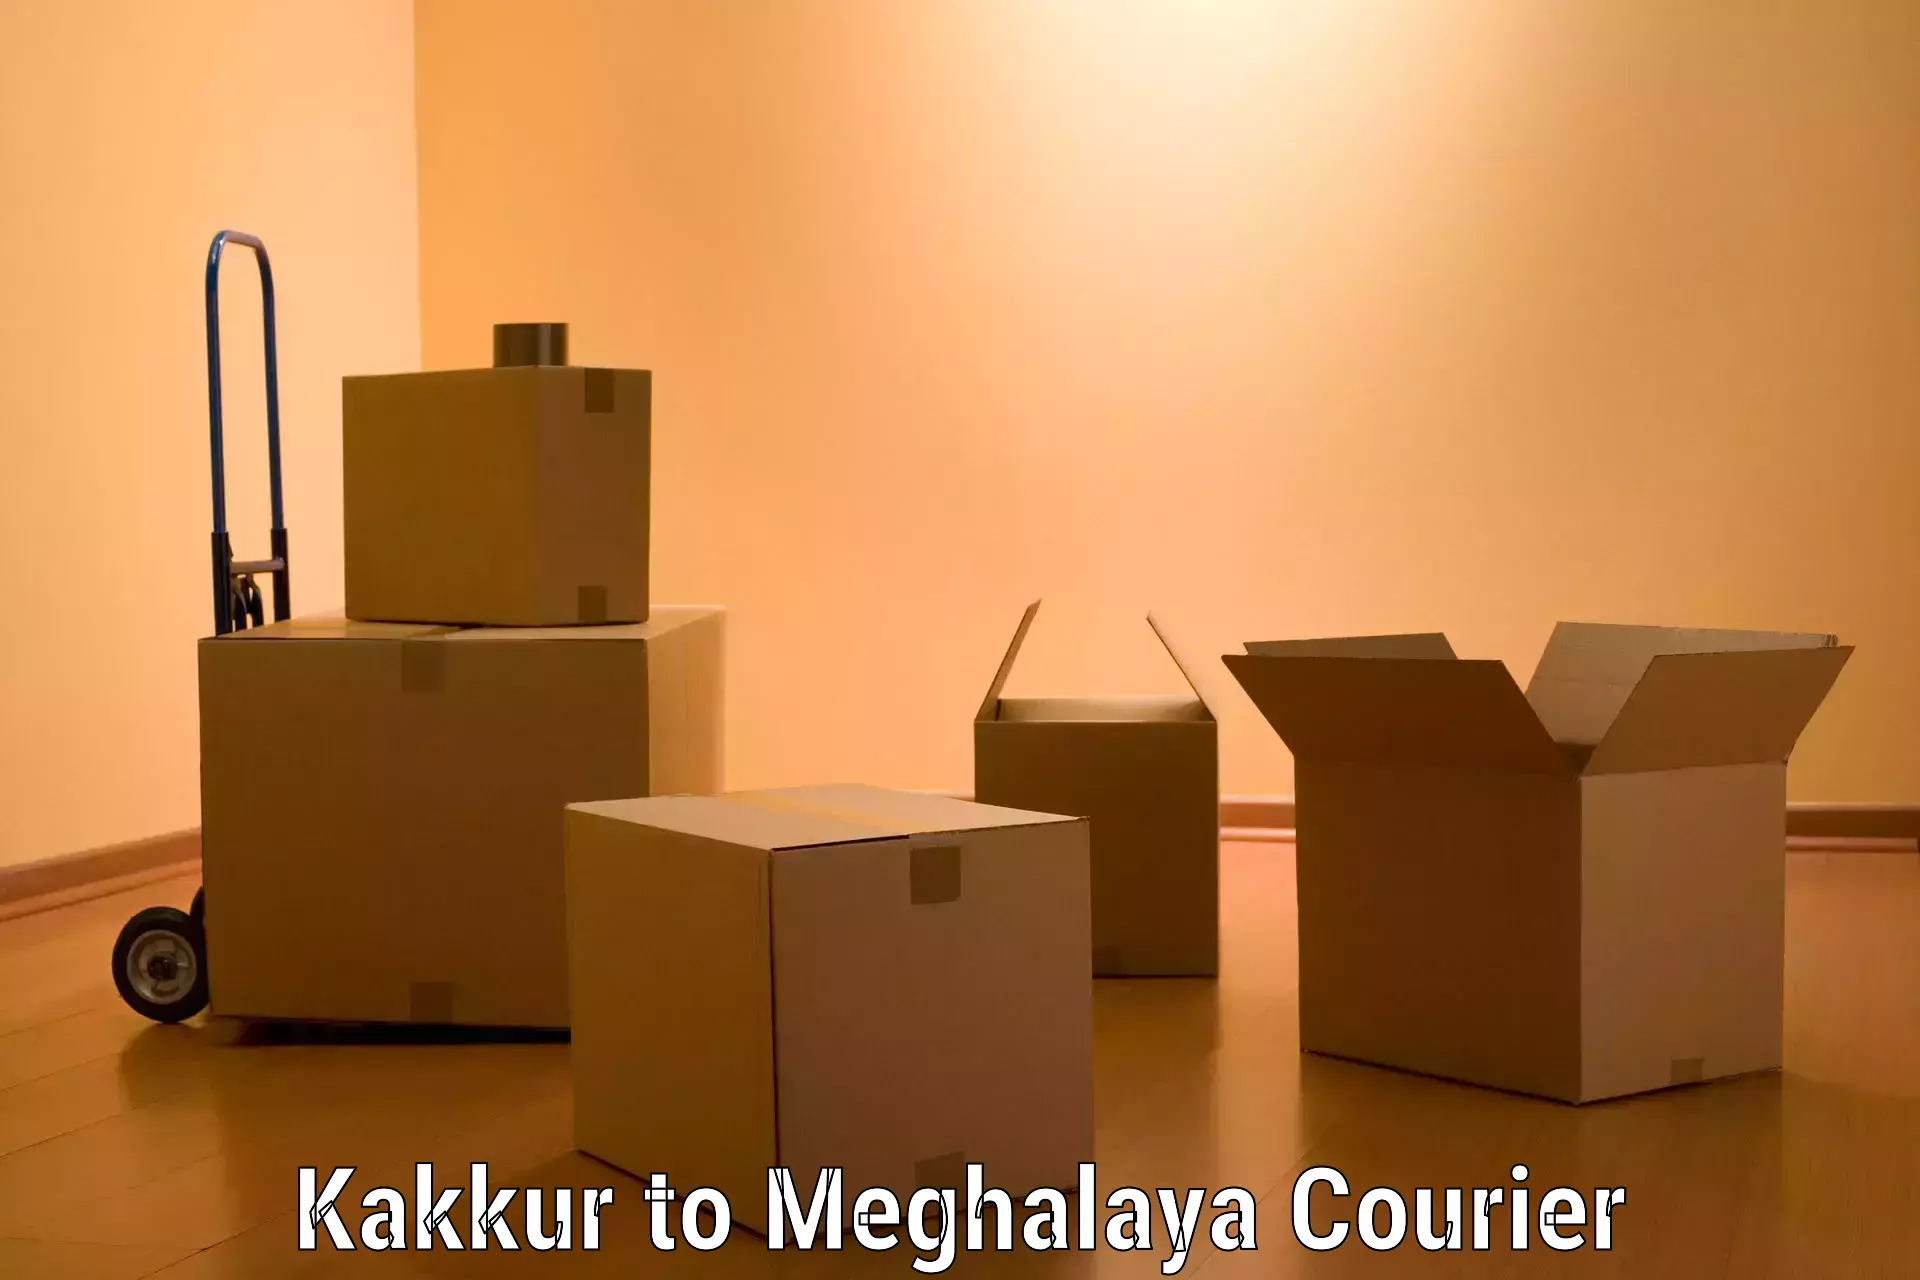 Professional packing services Kakkur to Meghalaya